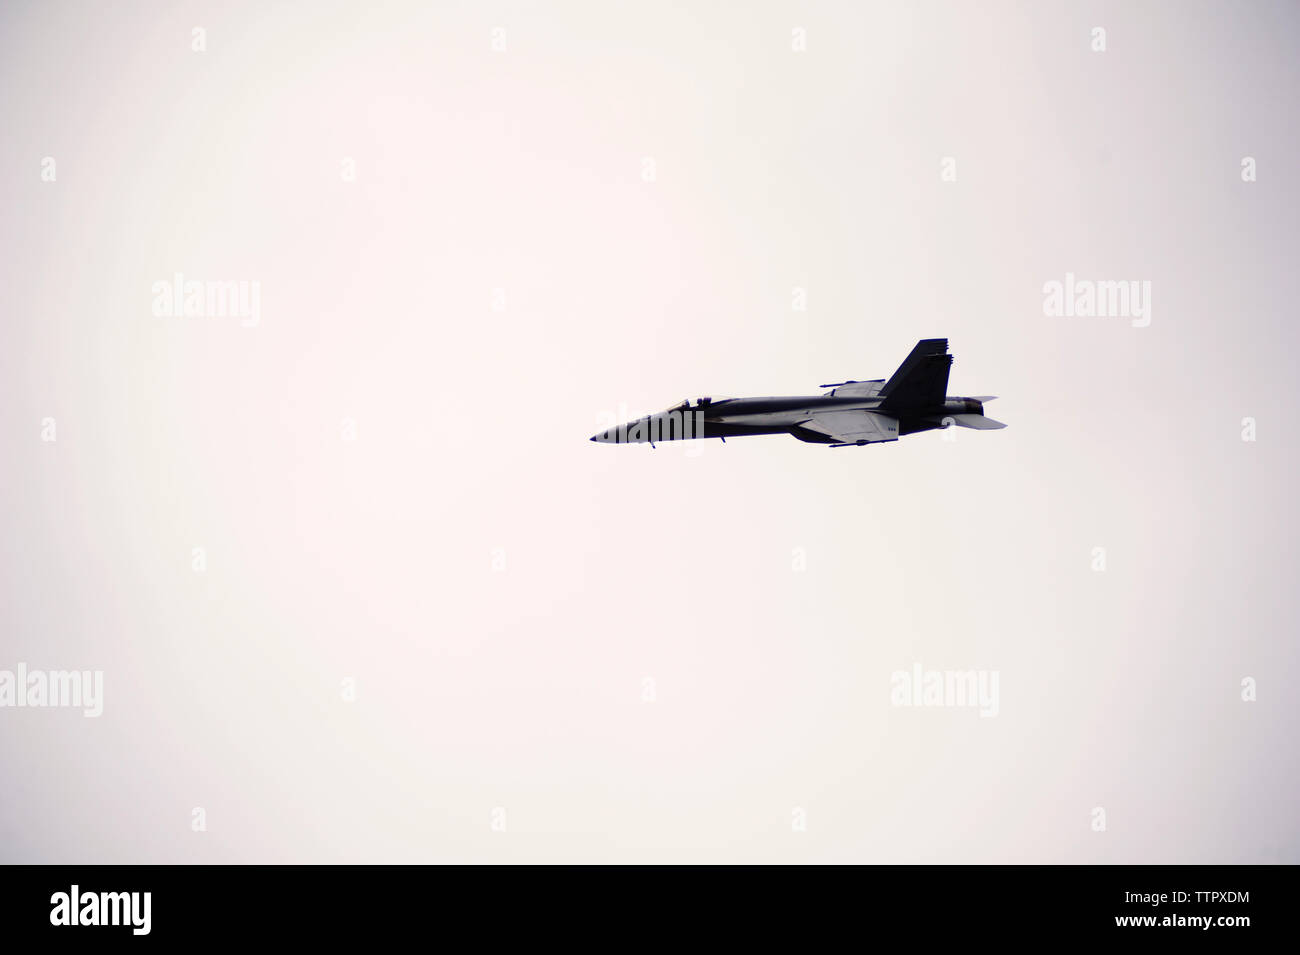 Low angle view of fighter plane voler dans un ciel clair Banque D'Images